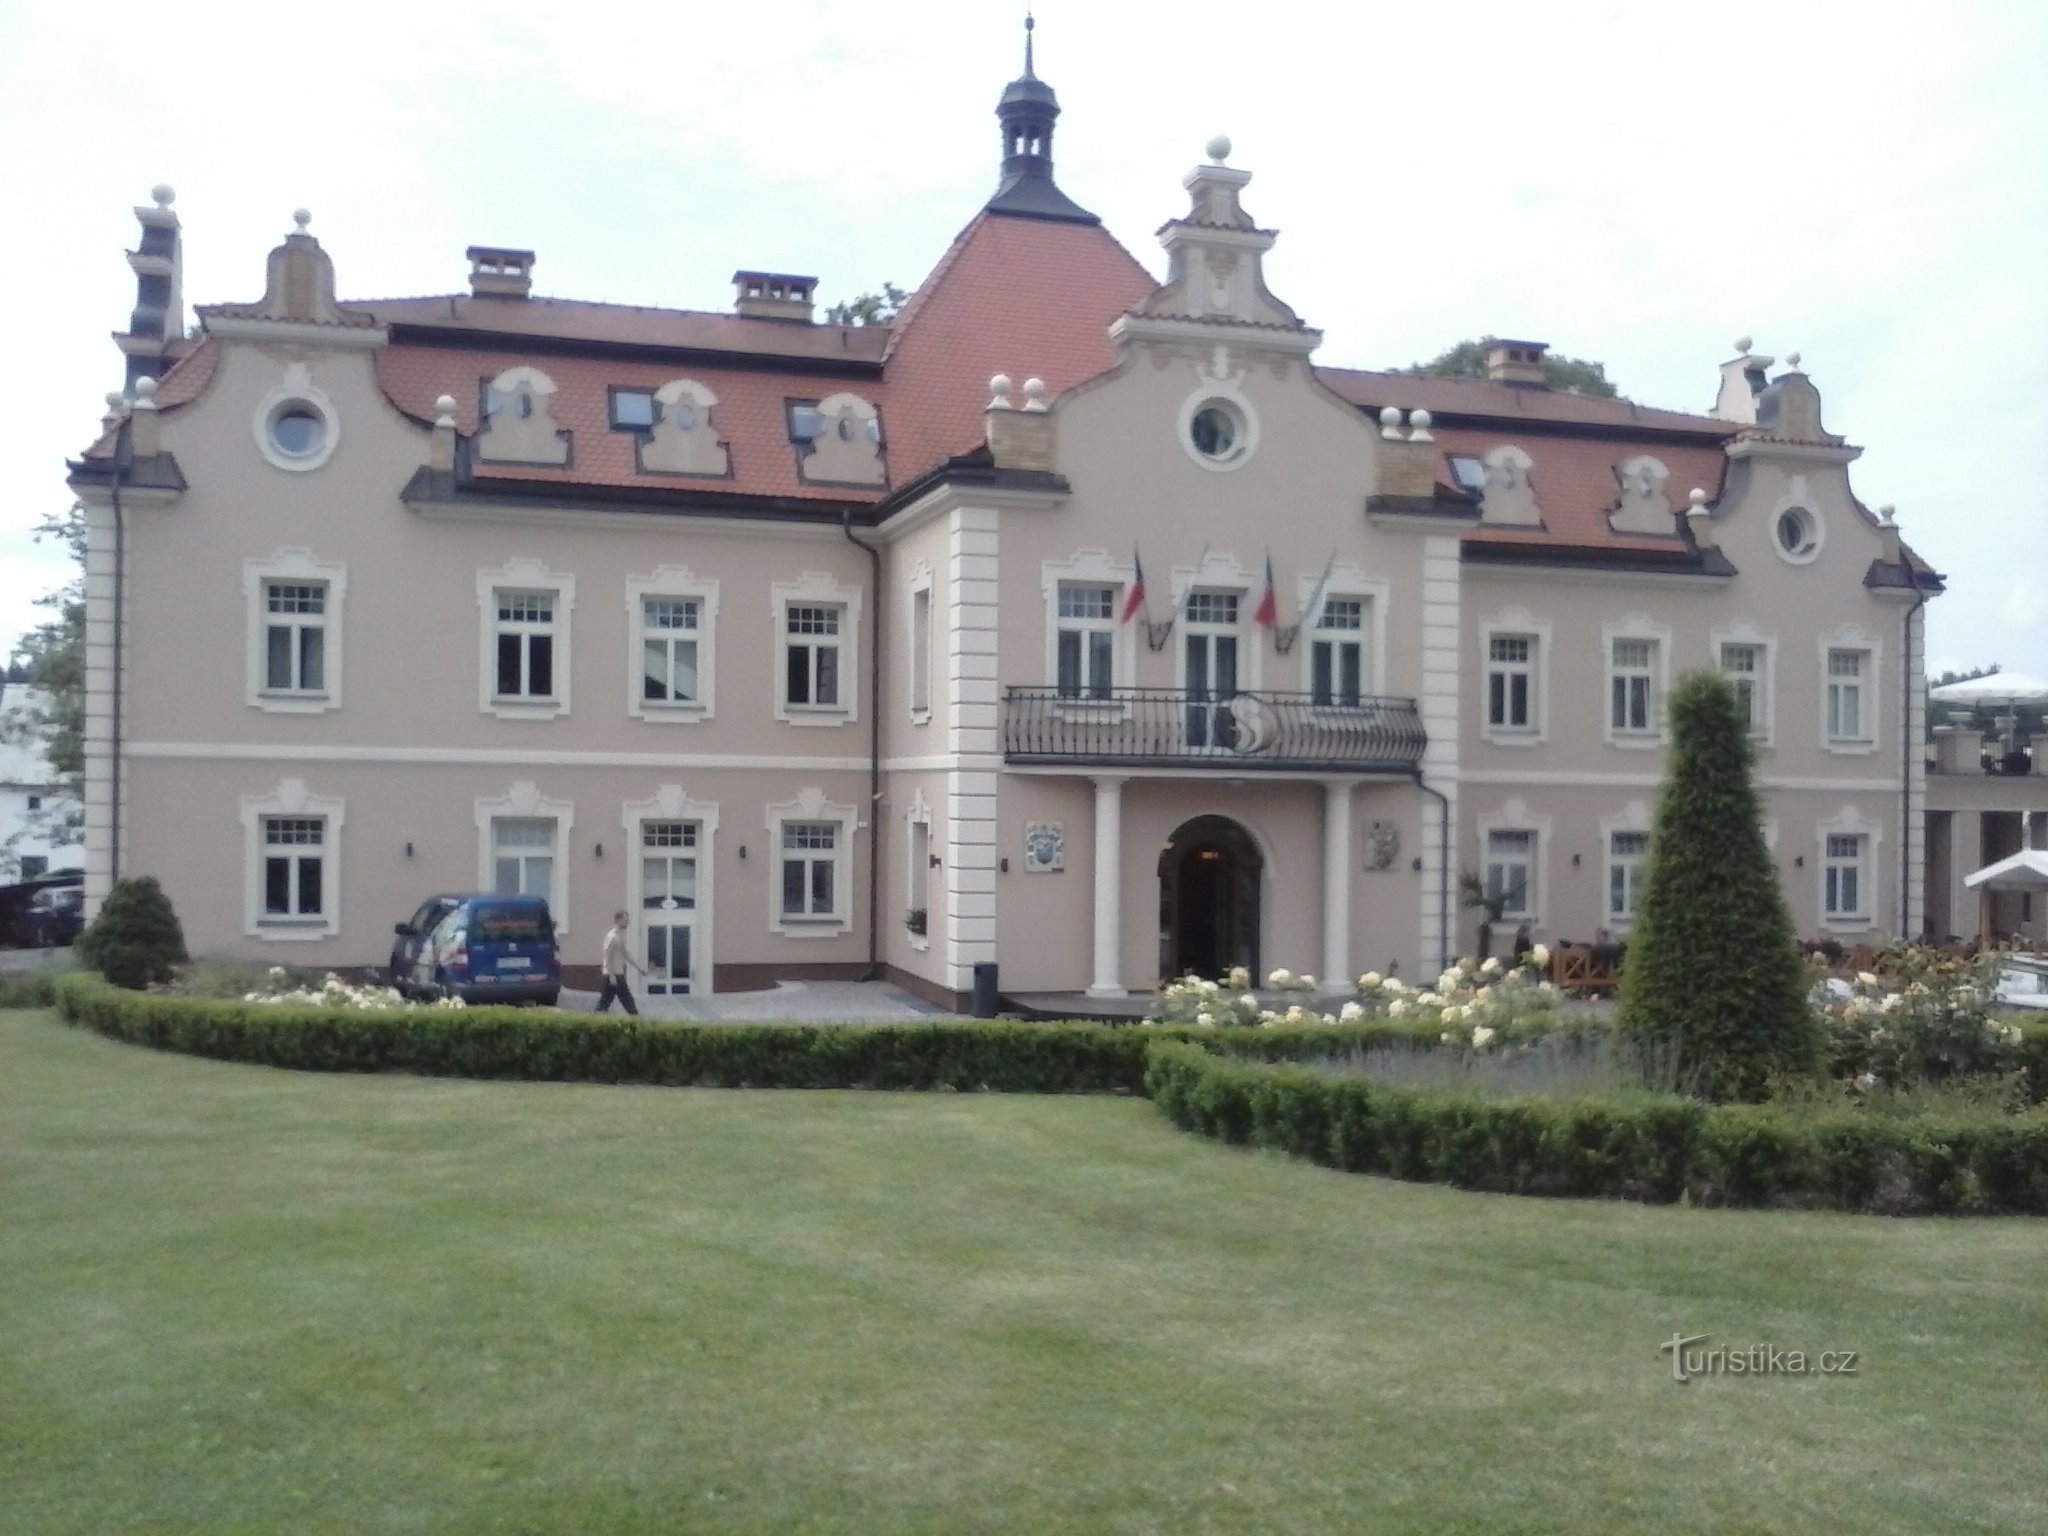 Současný zámek Berchtold